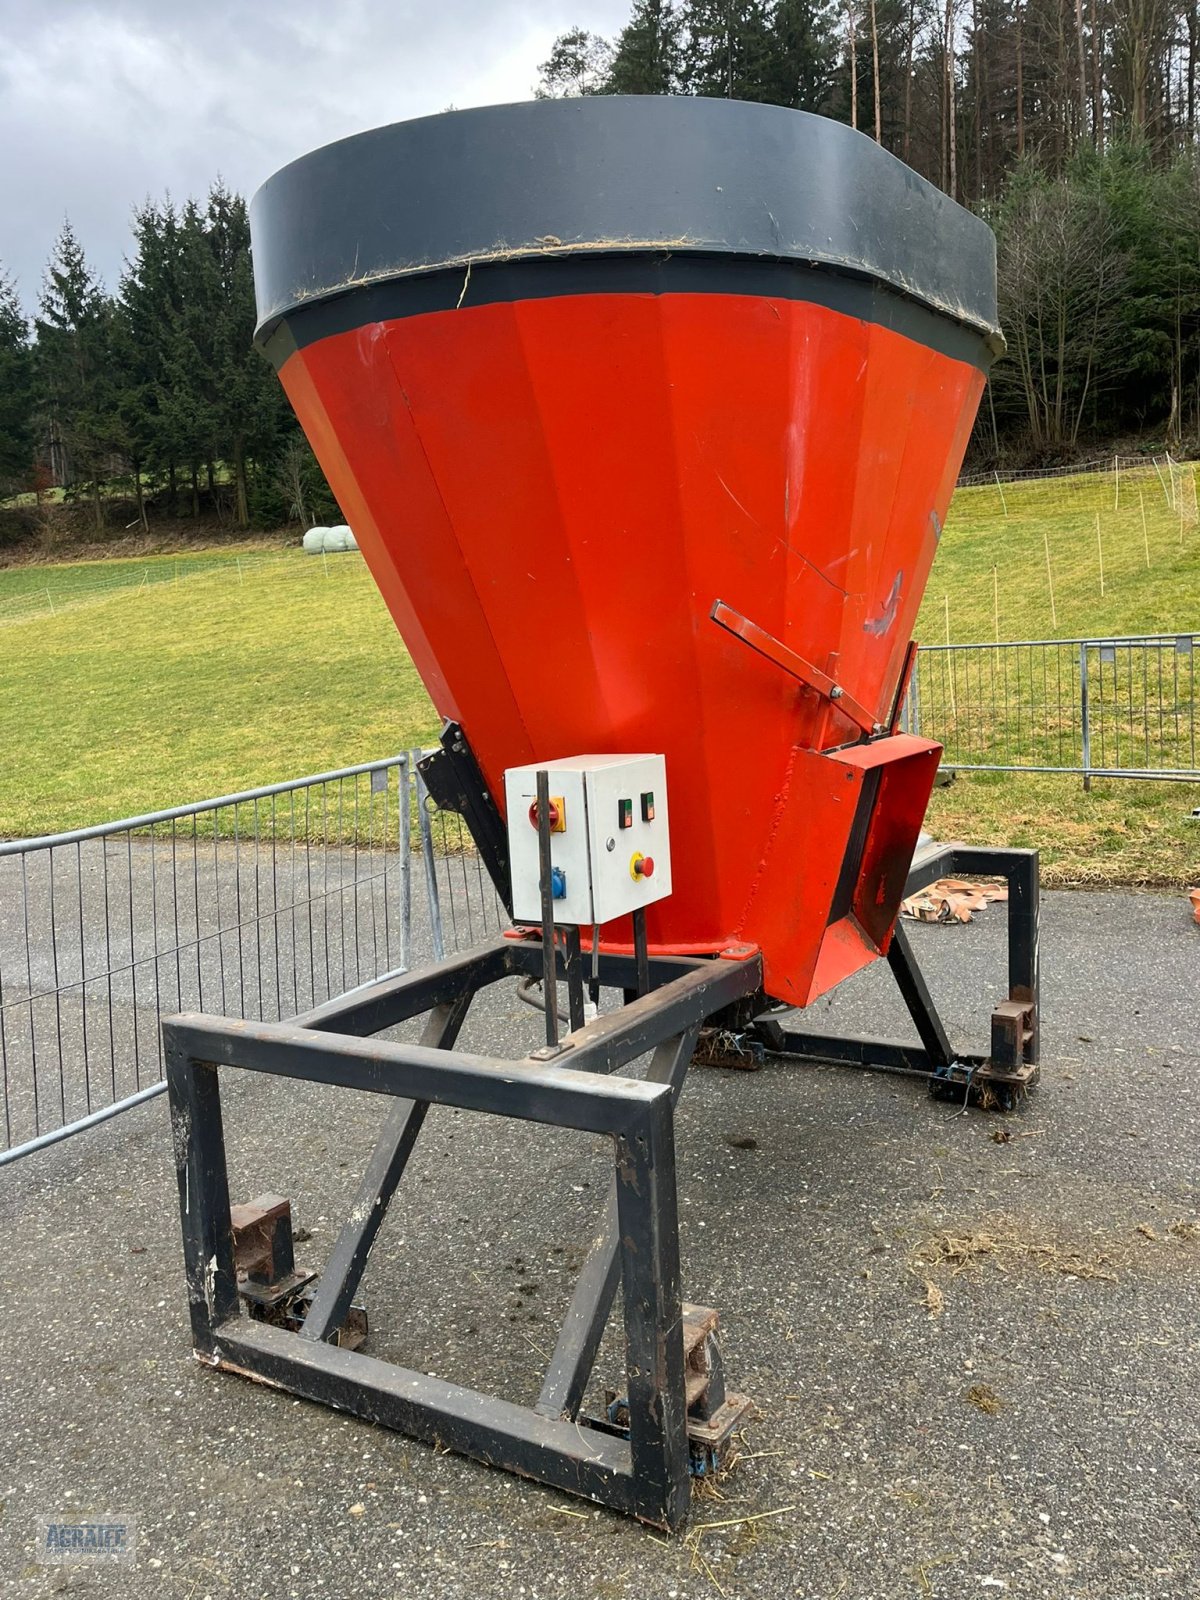 Futtermischwagen des Typs Futtermischer 2,5, Gebrauchtmaschine in Salching bei Straubing (Bild 2)